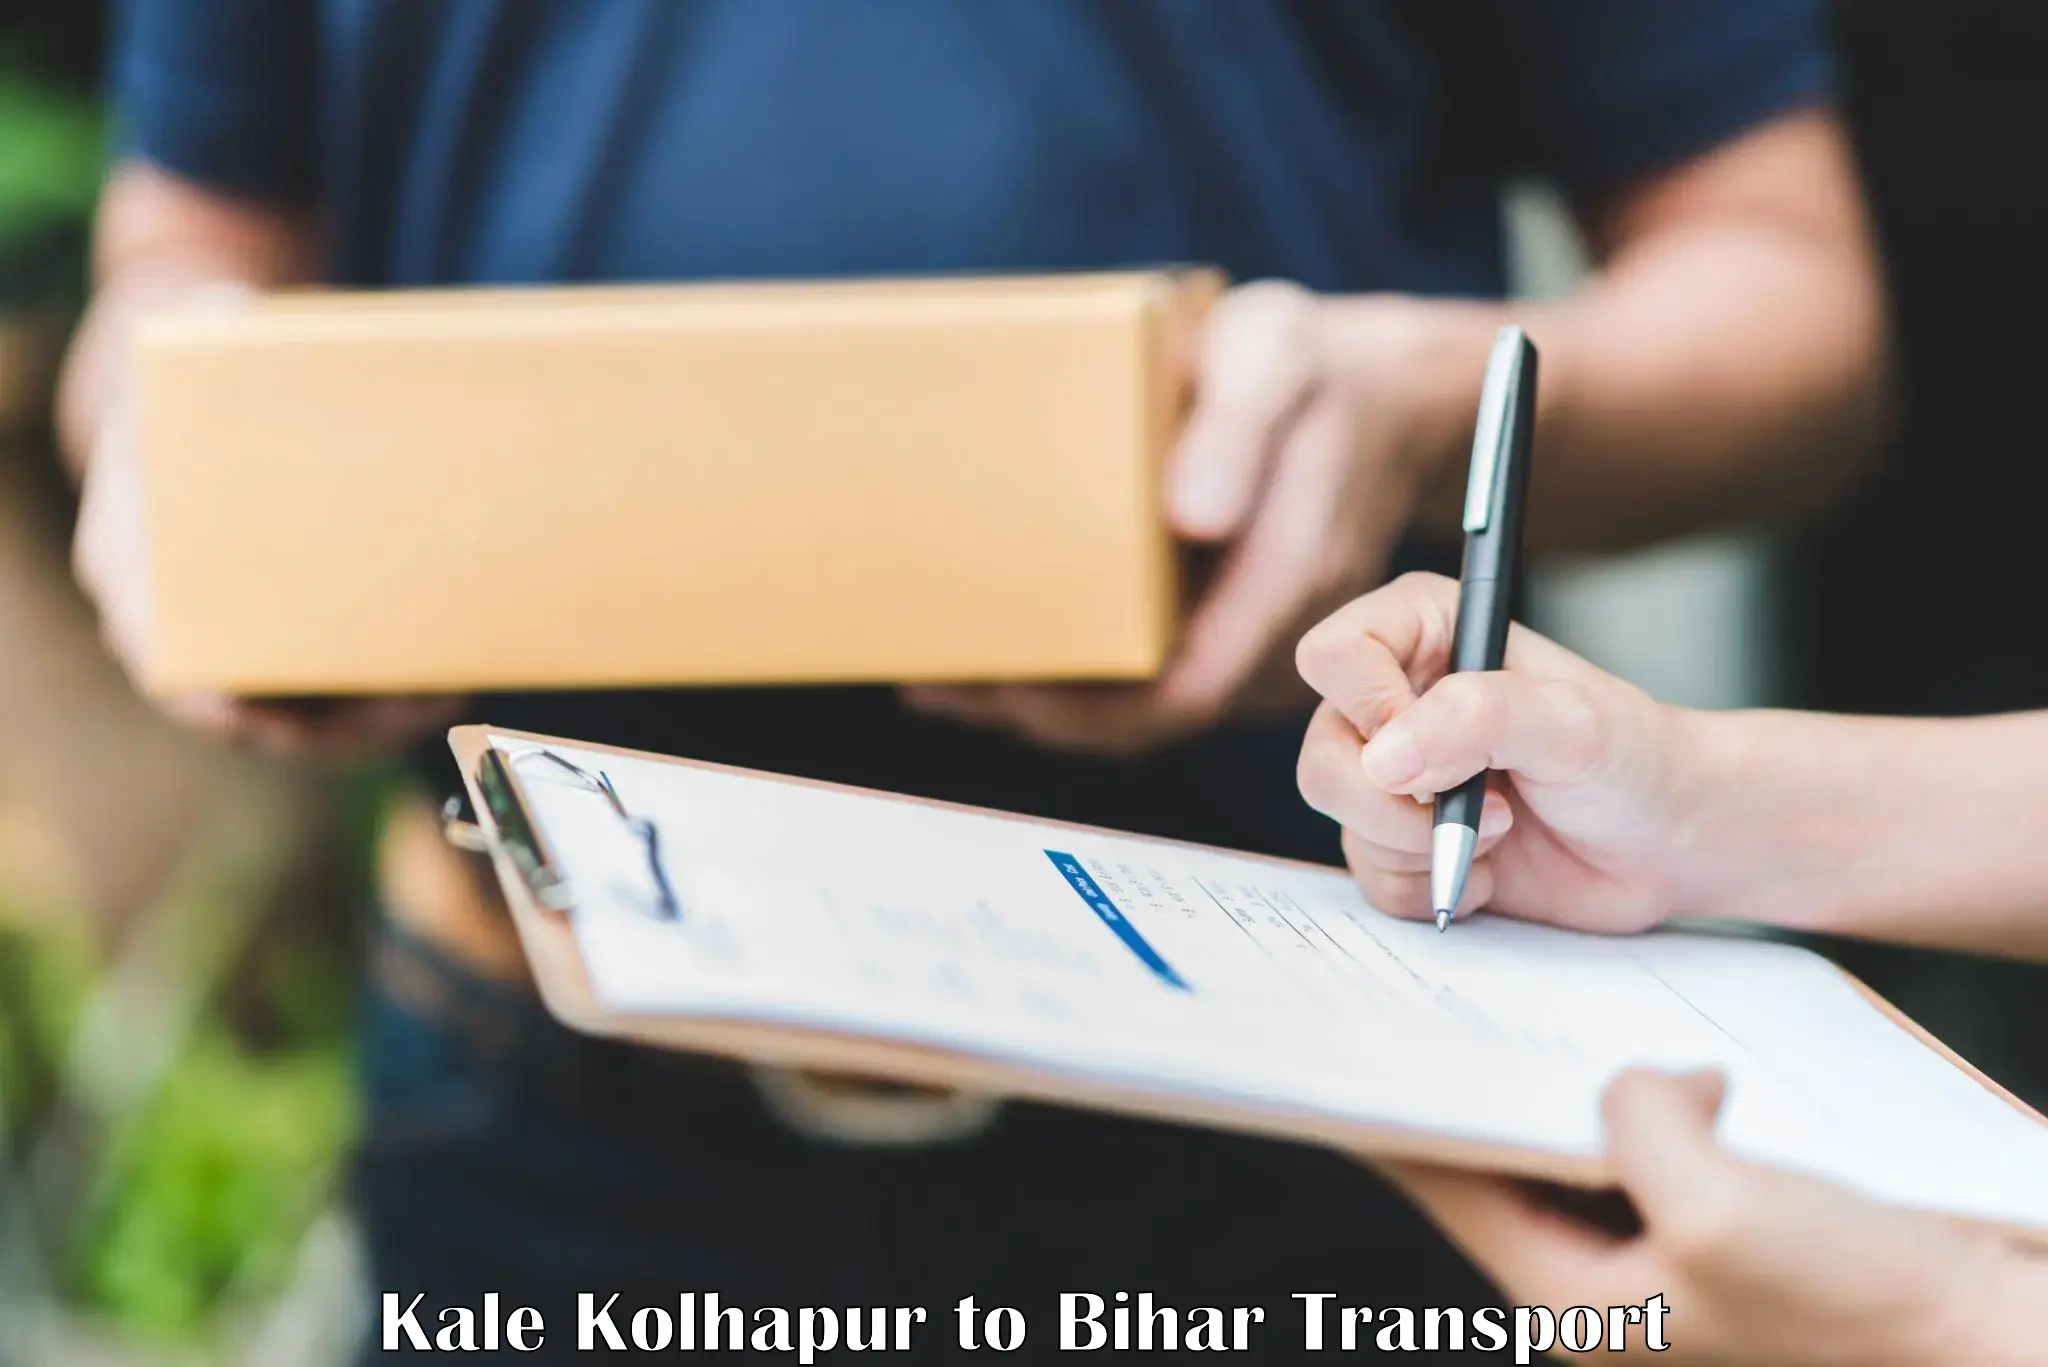 Two wheeler transport services Kale Kolhapur to Bihar